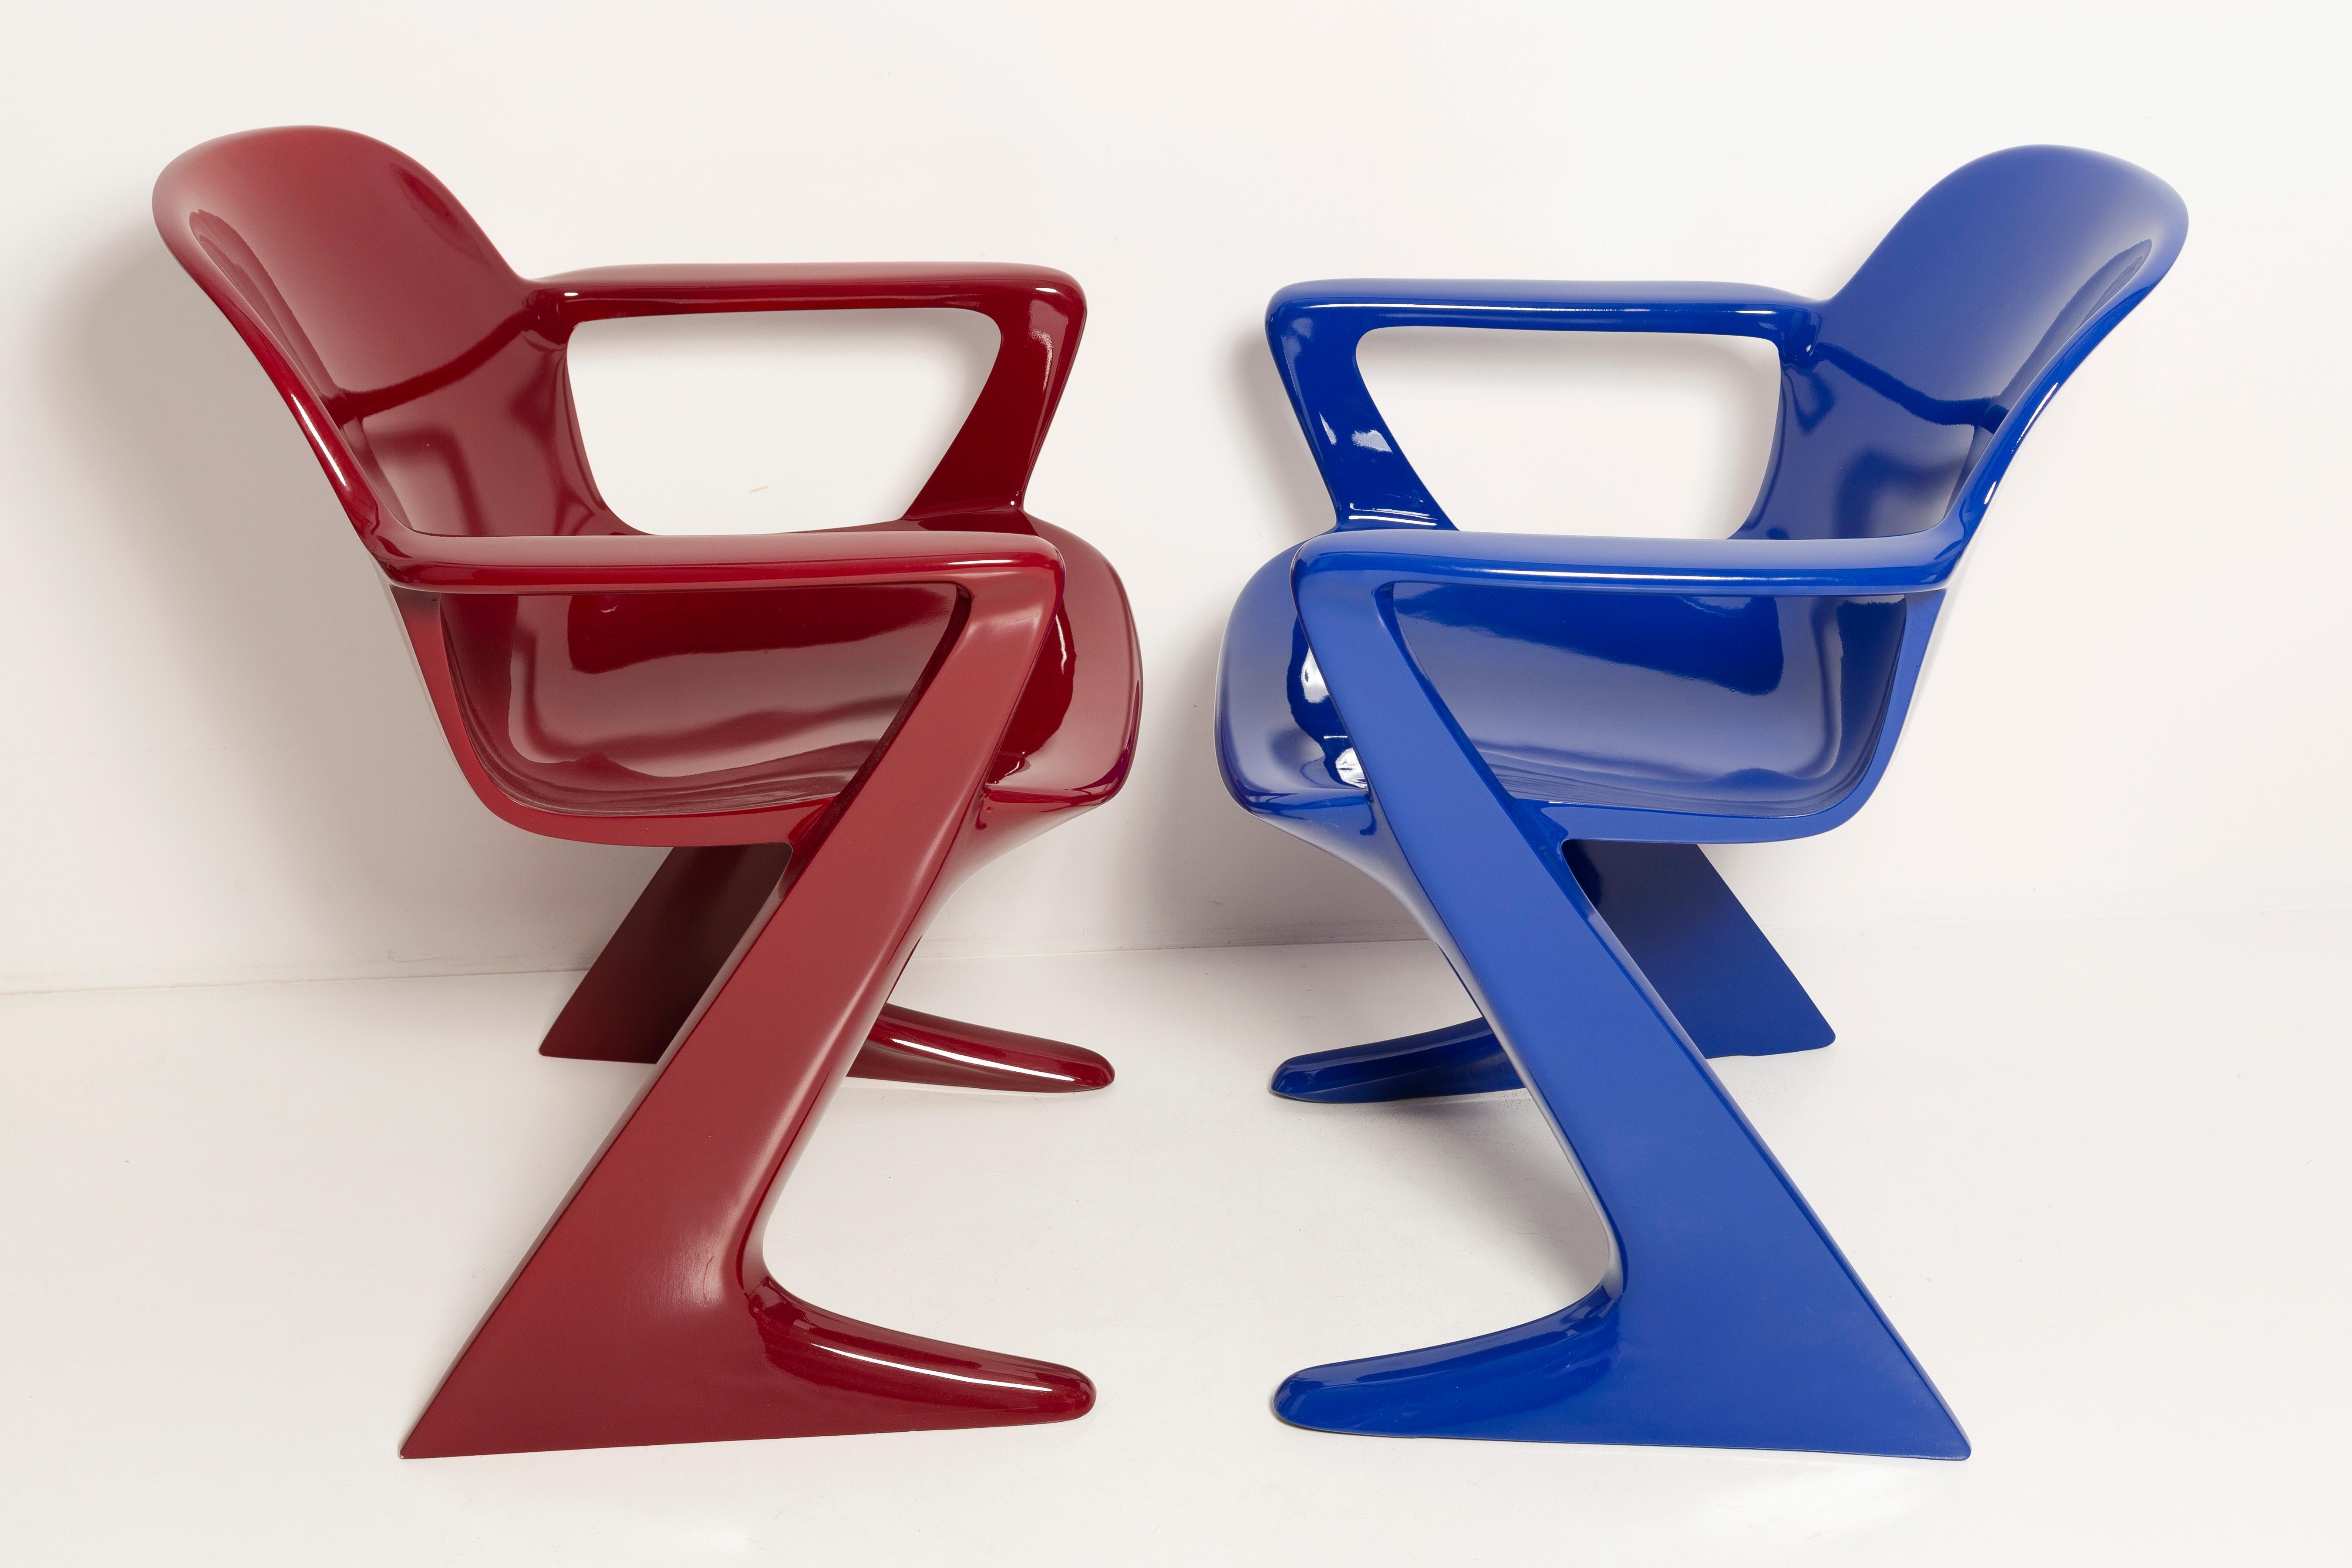 La chaise z.stuhl, conçue par Ernst Moeckl (1931-2013) dans les années 1970, est une chaise cantilever en polyuréthane, disponible avec ou sans accoudoirs. Dans la langue vernaculaire, la chaise est connue sous des noms géométriques tels que 